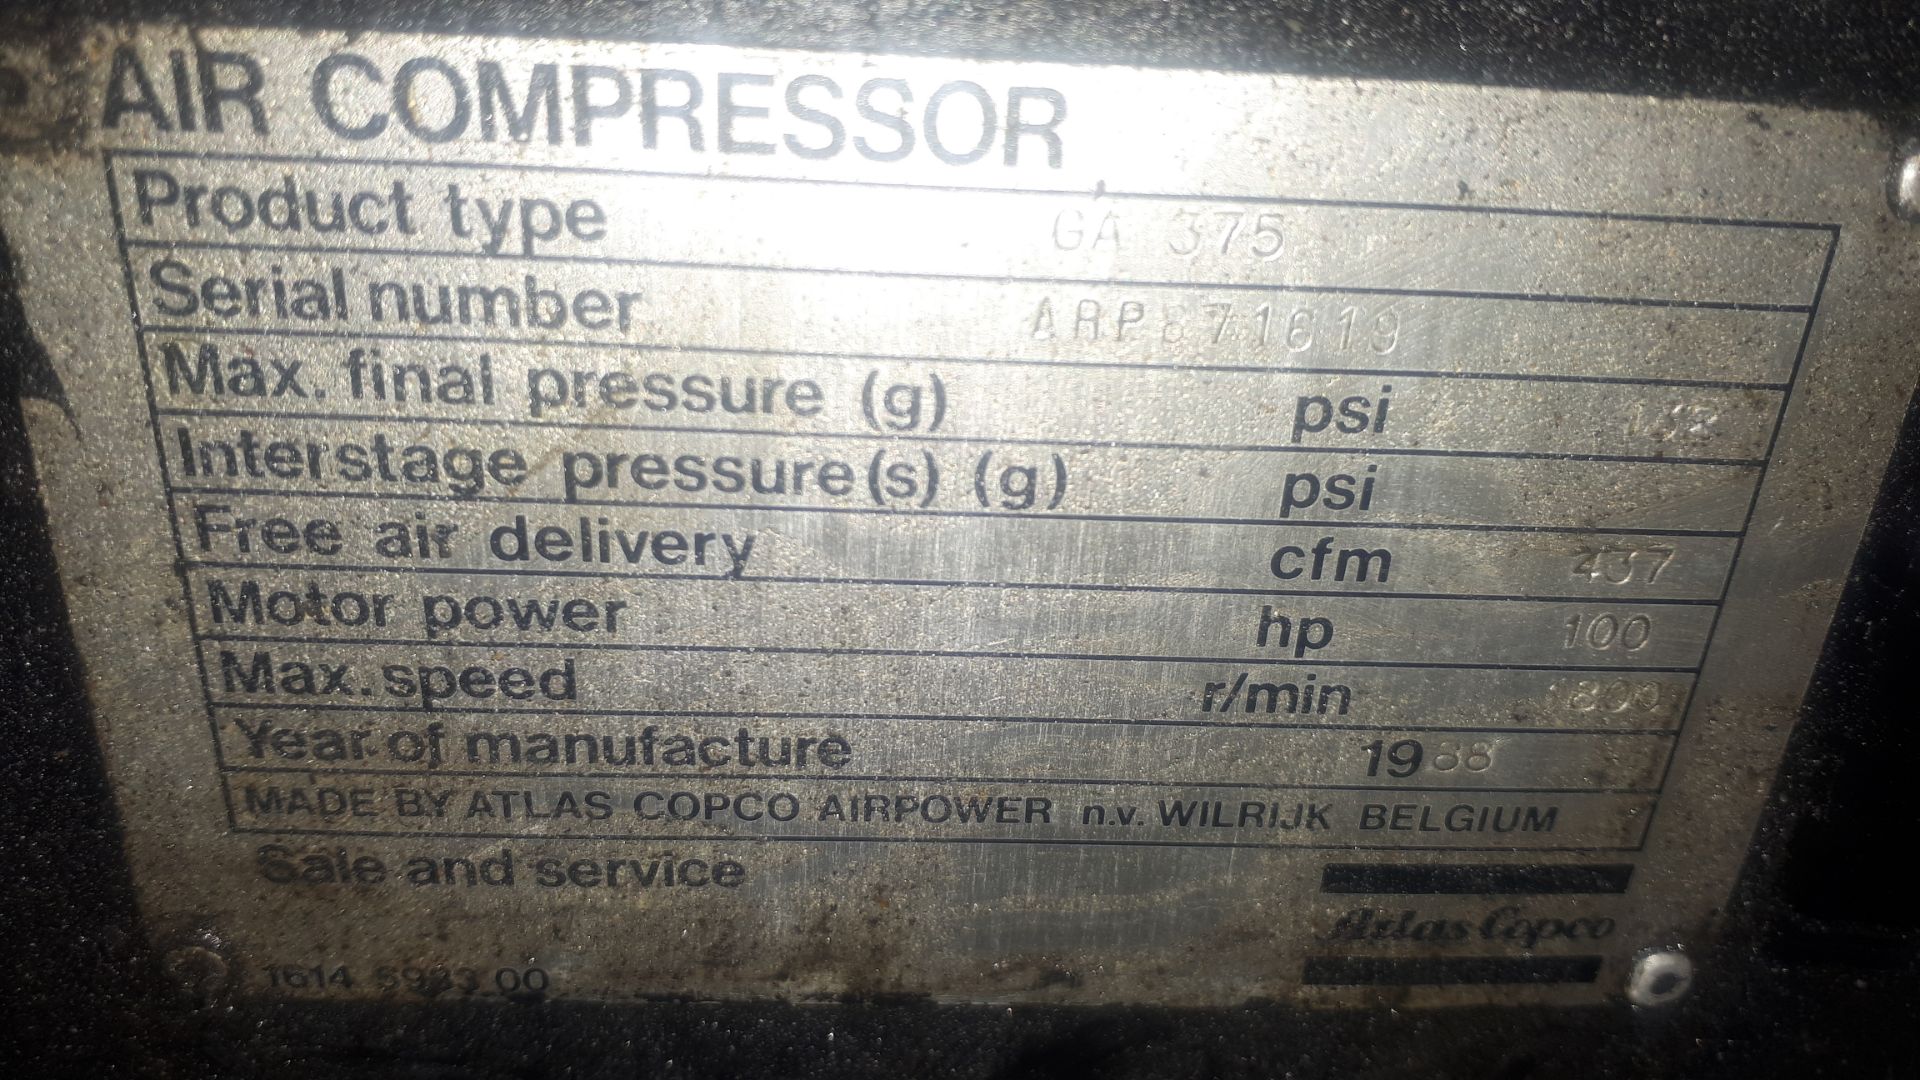 Atlas Copco Air Compressor - Image 5 of 5